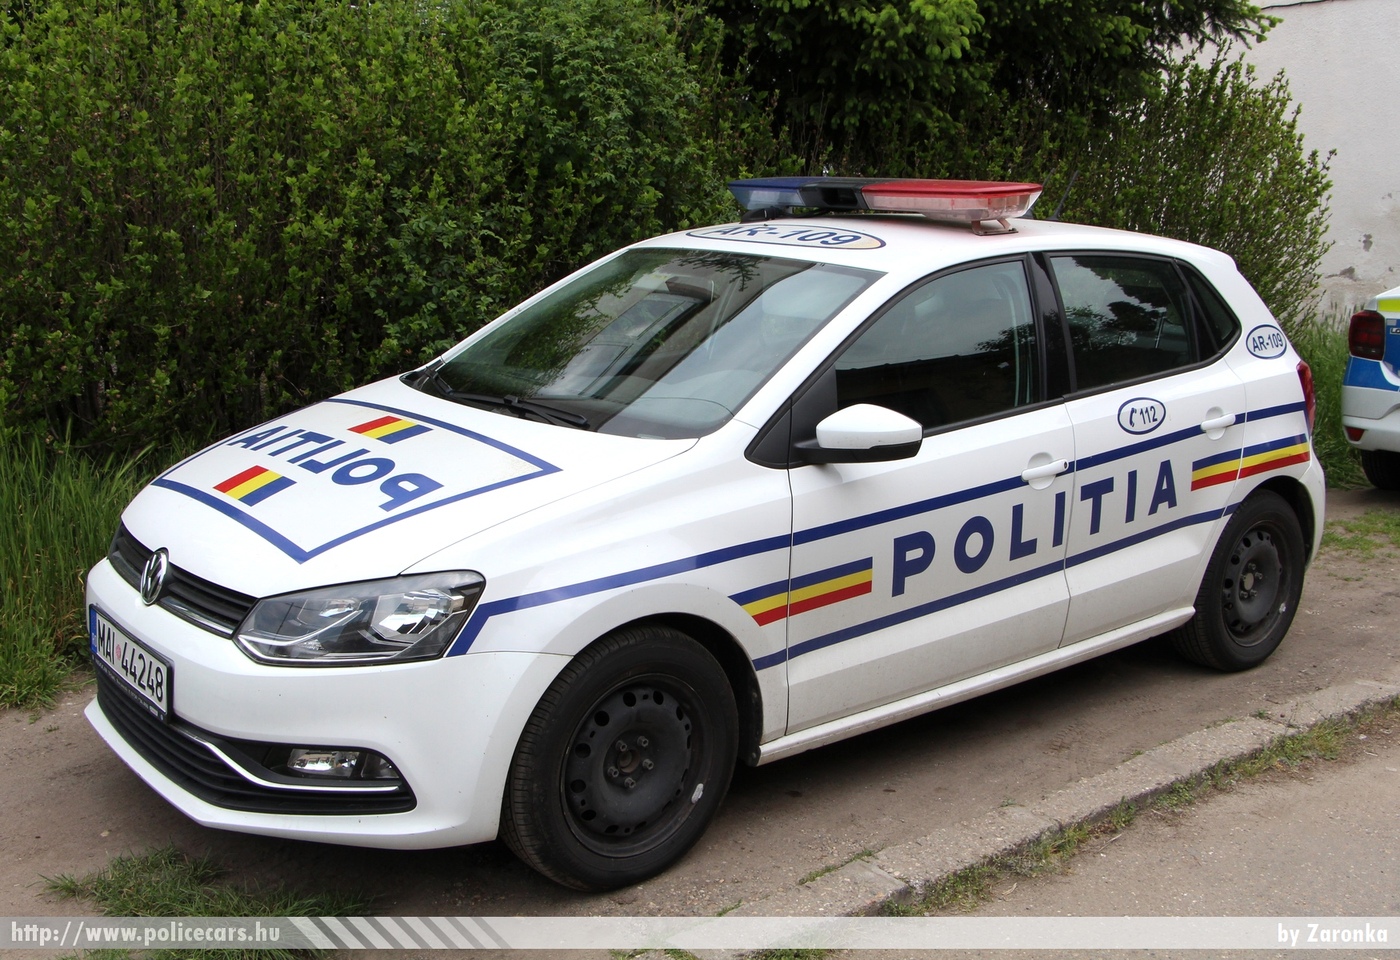 Volkswagen Polo, Politia, fotó: Zaronka
Keywords: román Románia rendőr rendőrautó rendőrség police policecar Romanian